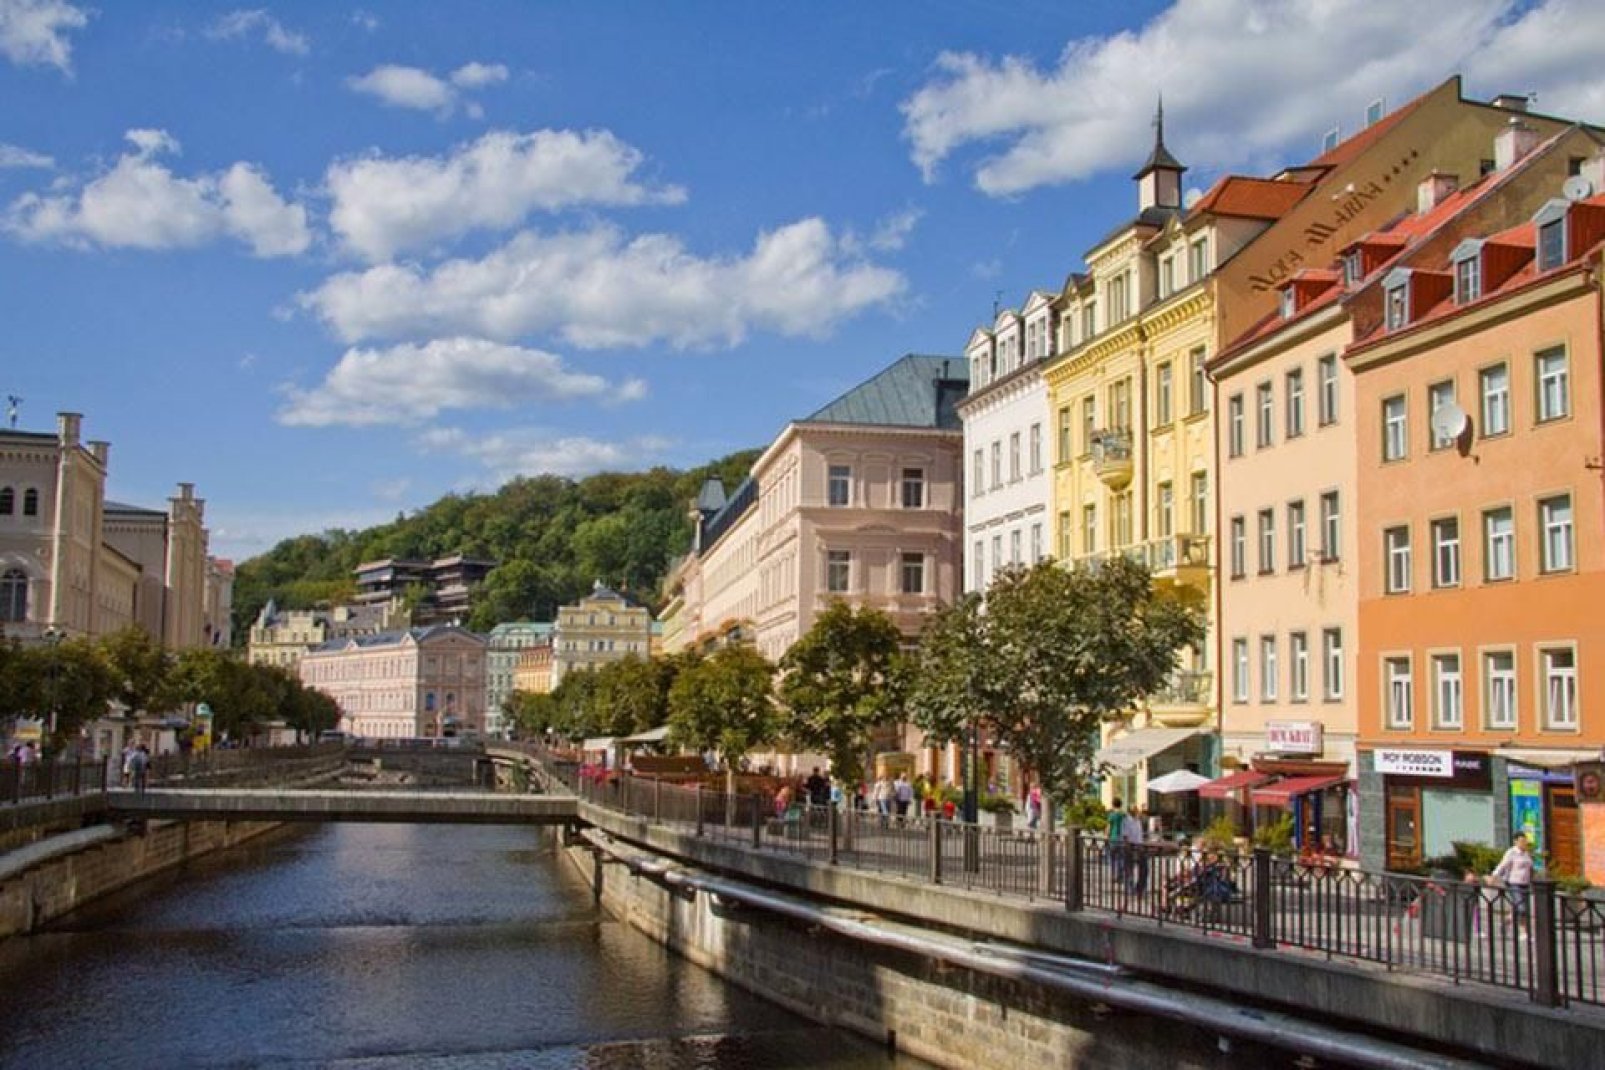 La ciudad de Karlovy Vary debe su nombre al Rey de Bohemia y al emperador romano Carlos IV, quienes fundaron la ciudad en 1370.